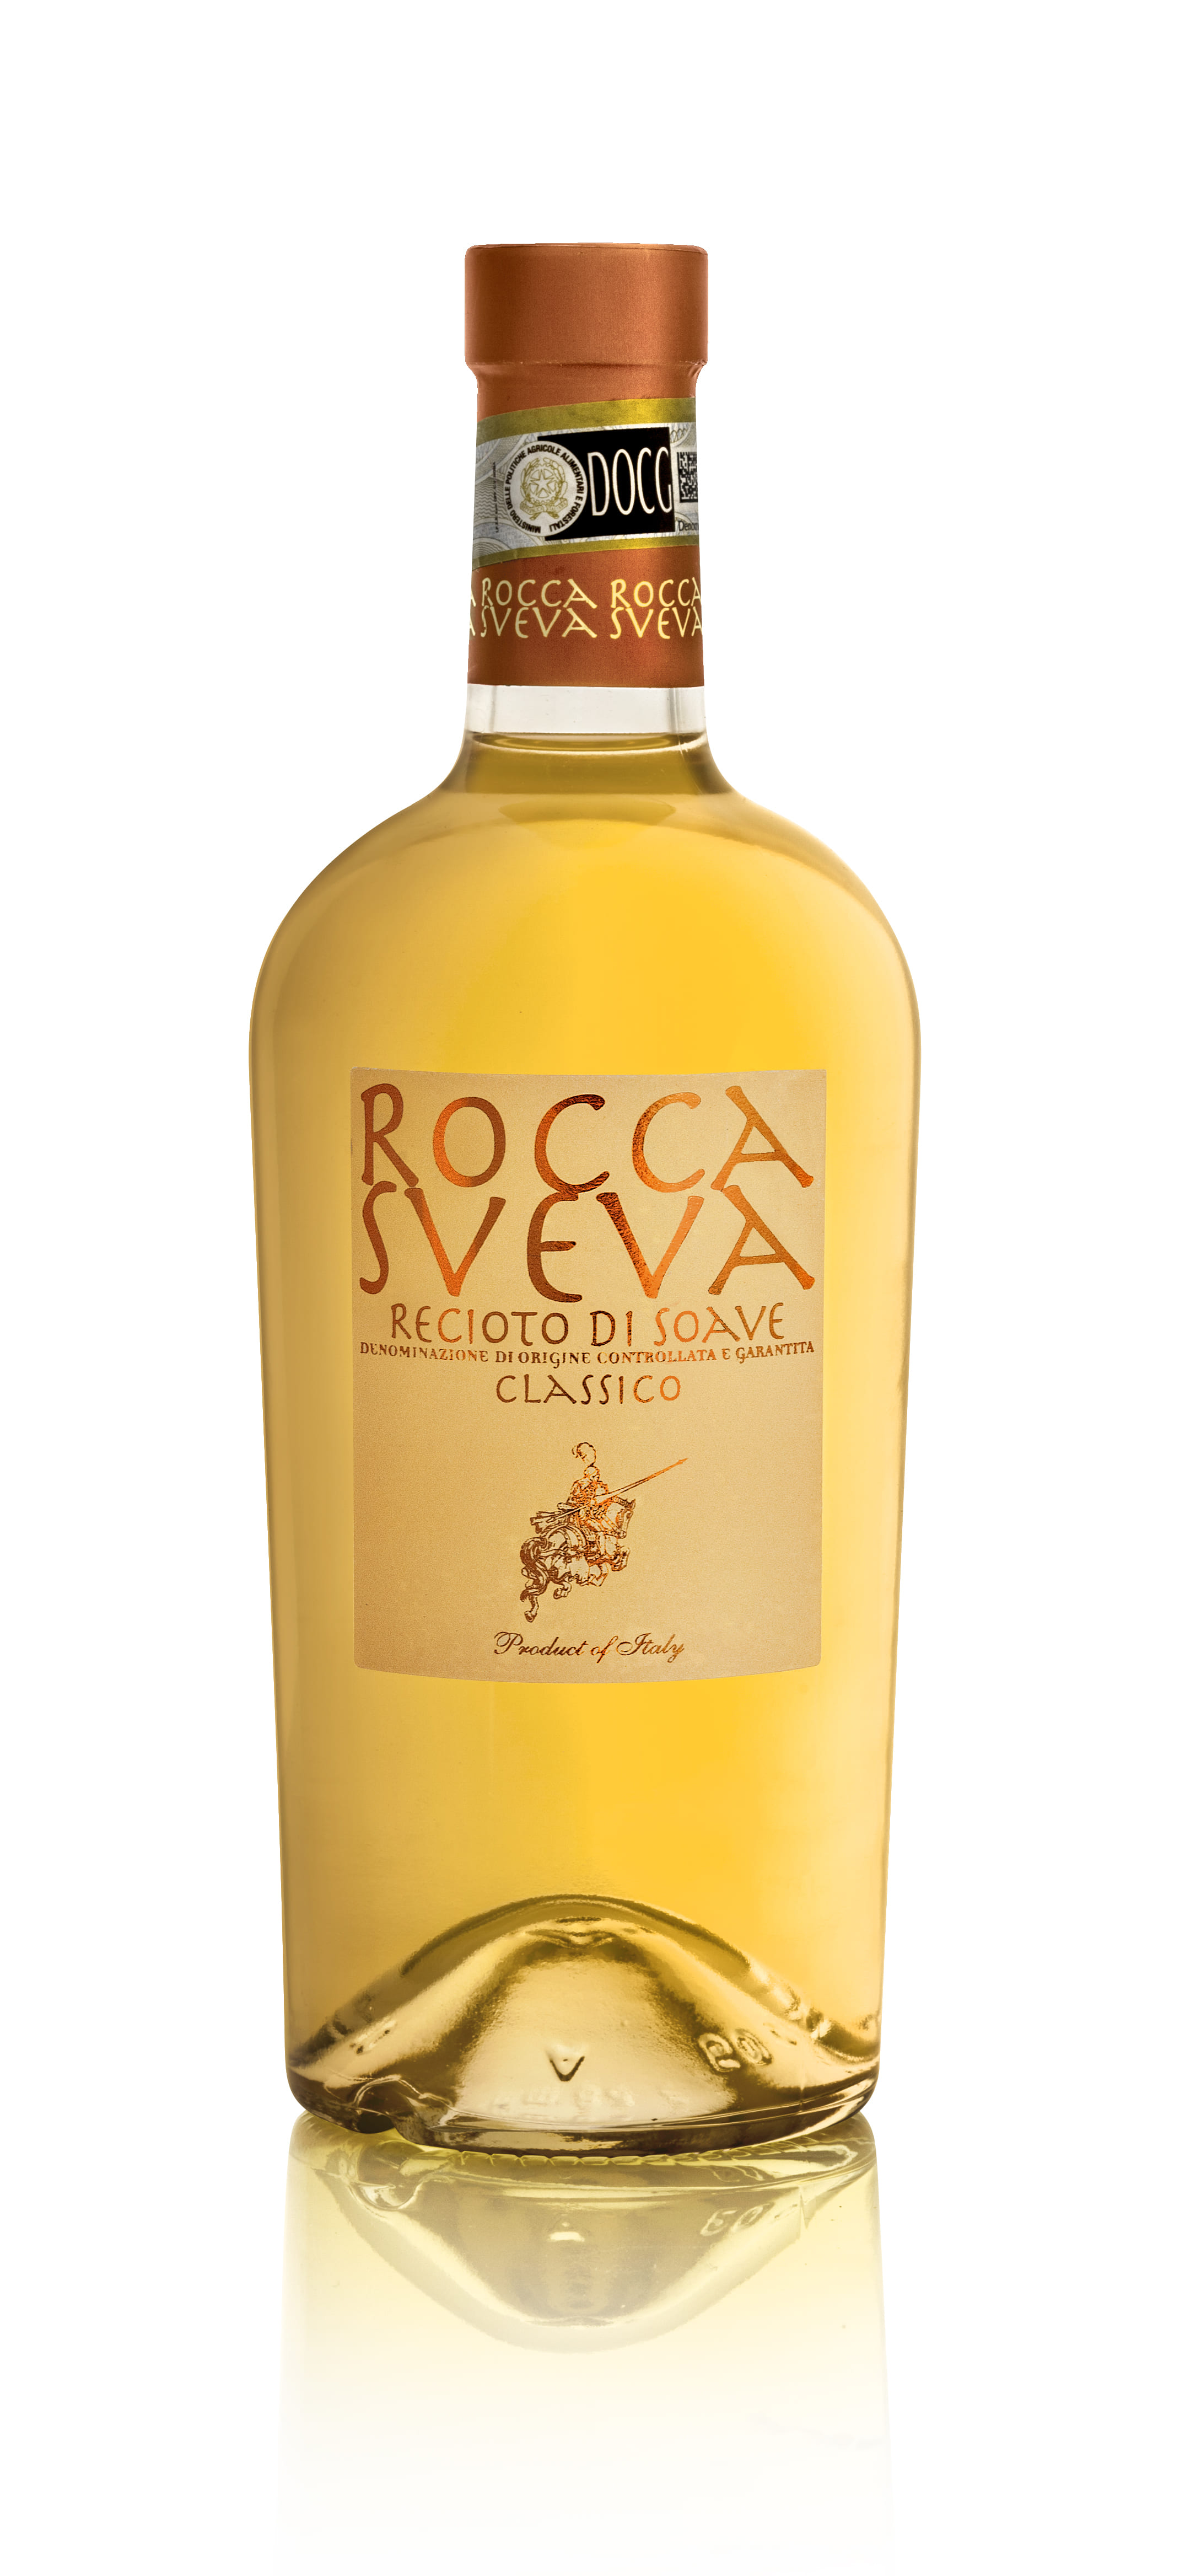 158 Recioto di Soave Classico Rocca Sveva.jpg